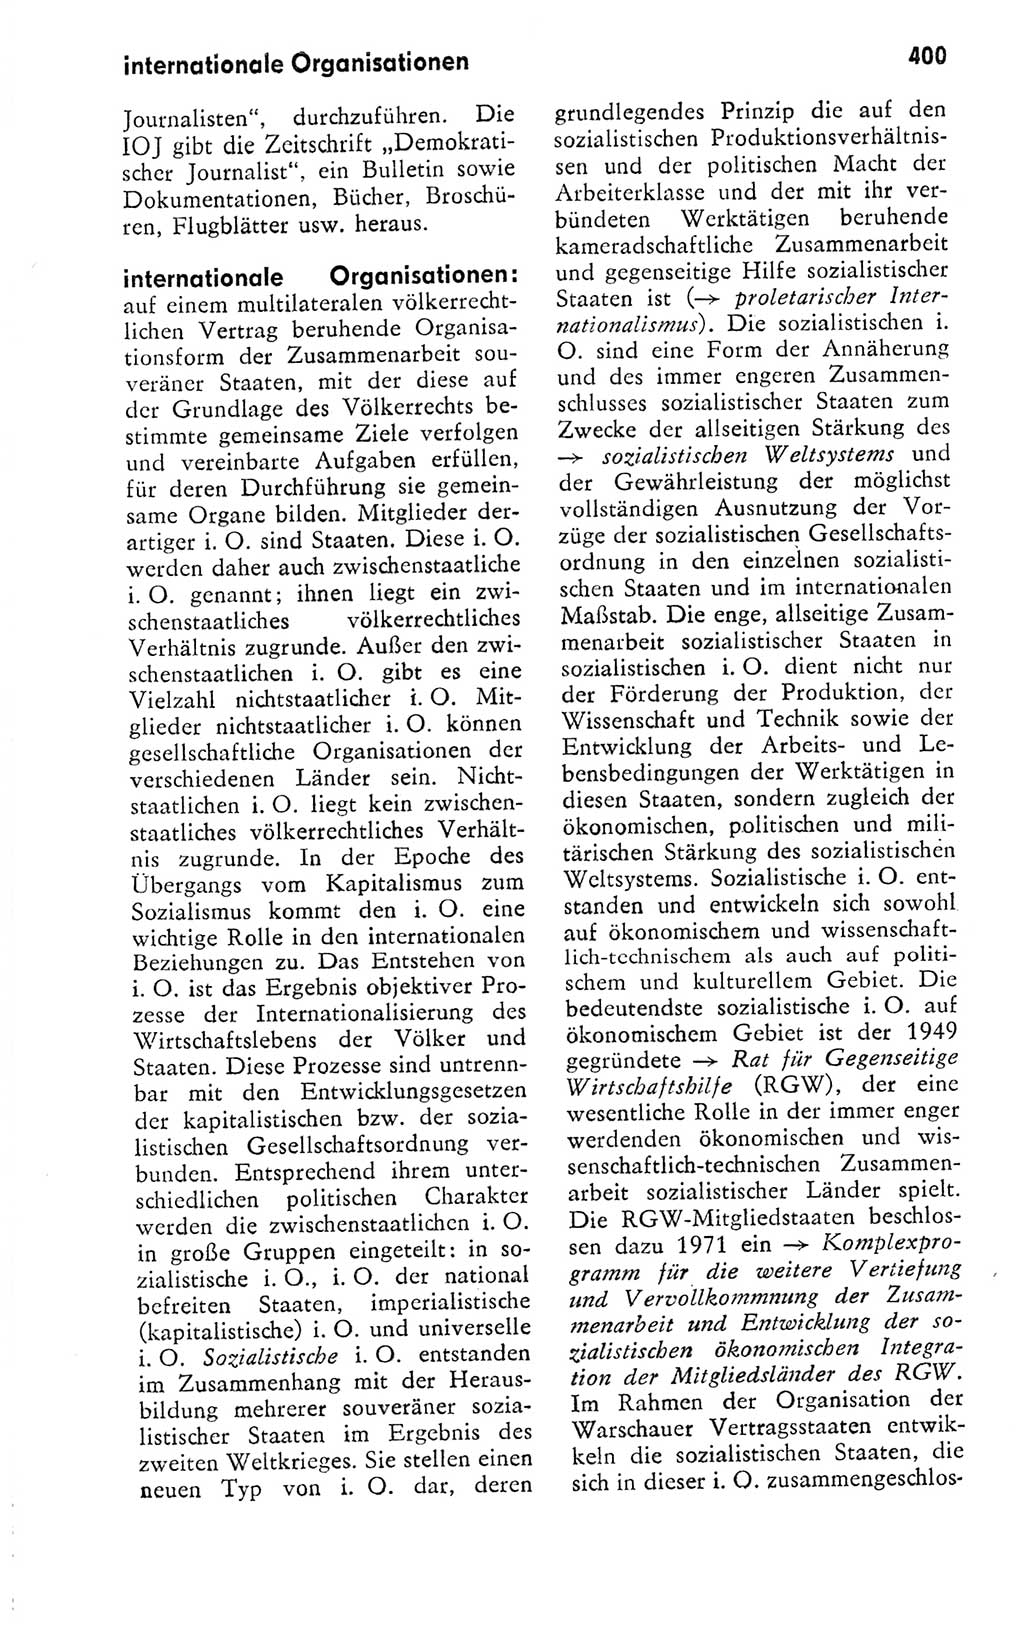 Kleines politisches Wörterbuch [Deutsche Demokratische Republik (DDR)] 1978, Seite 400 (Kl. pol. Wb. DDR 1978, S. 400)